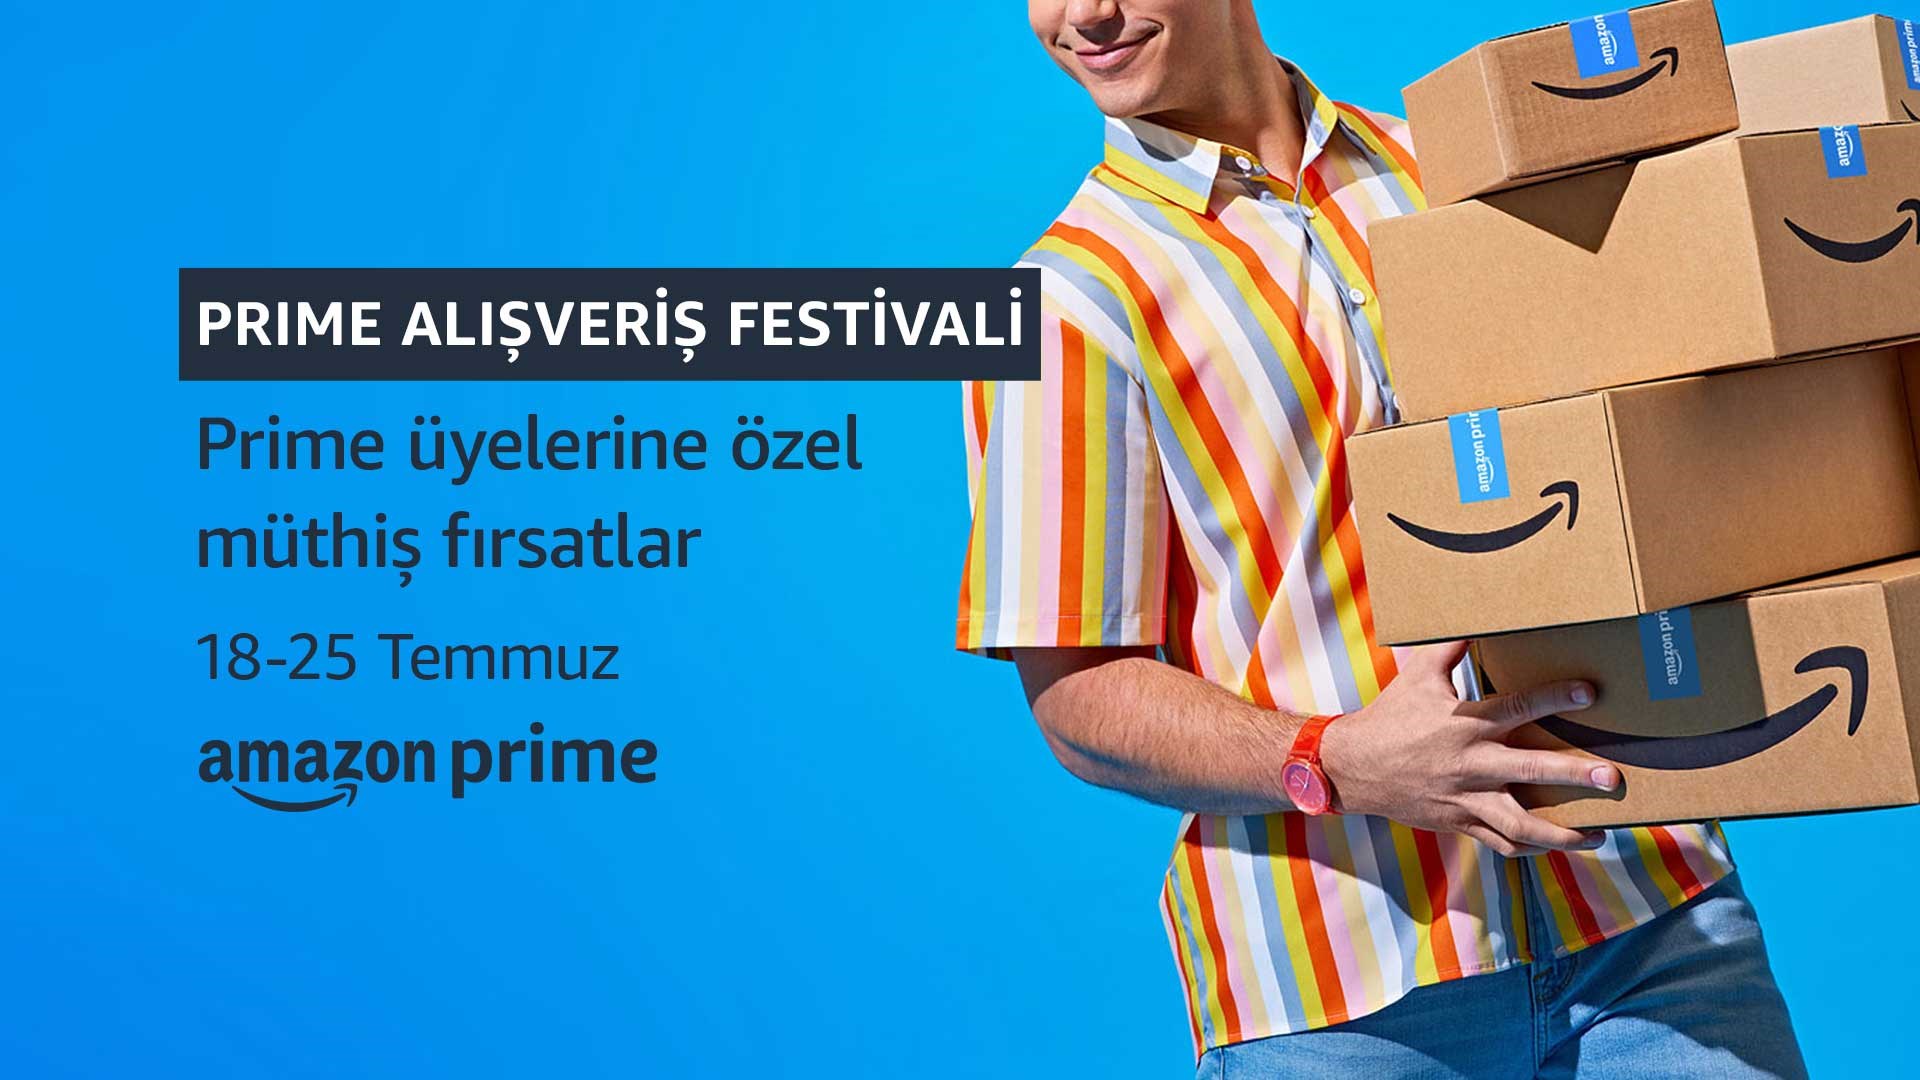 Amazon Prime Day Alışveriş Festivali 2022 başladı mı?